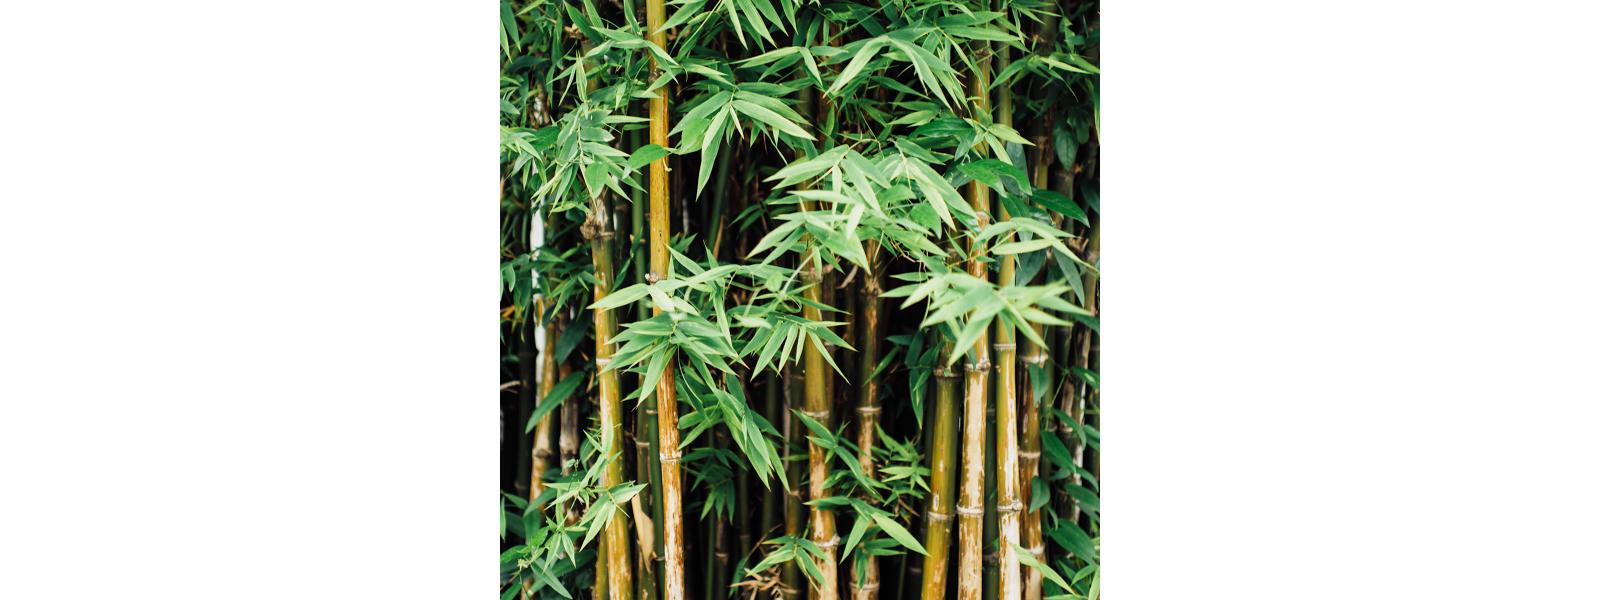 Det bredygtige valg er at vlge bambus